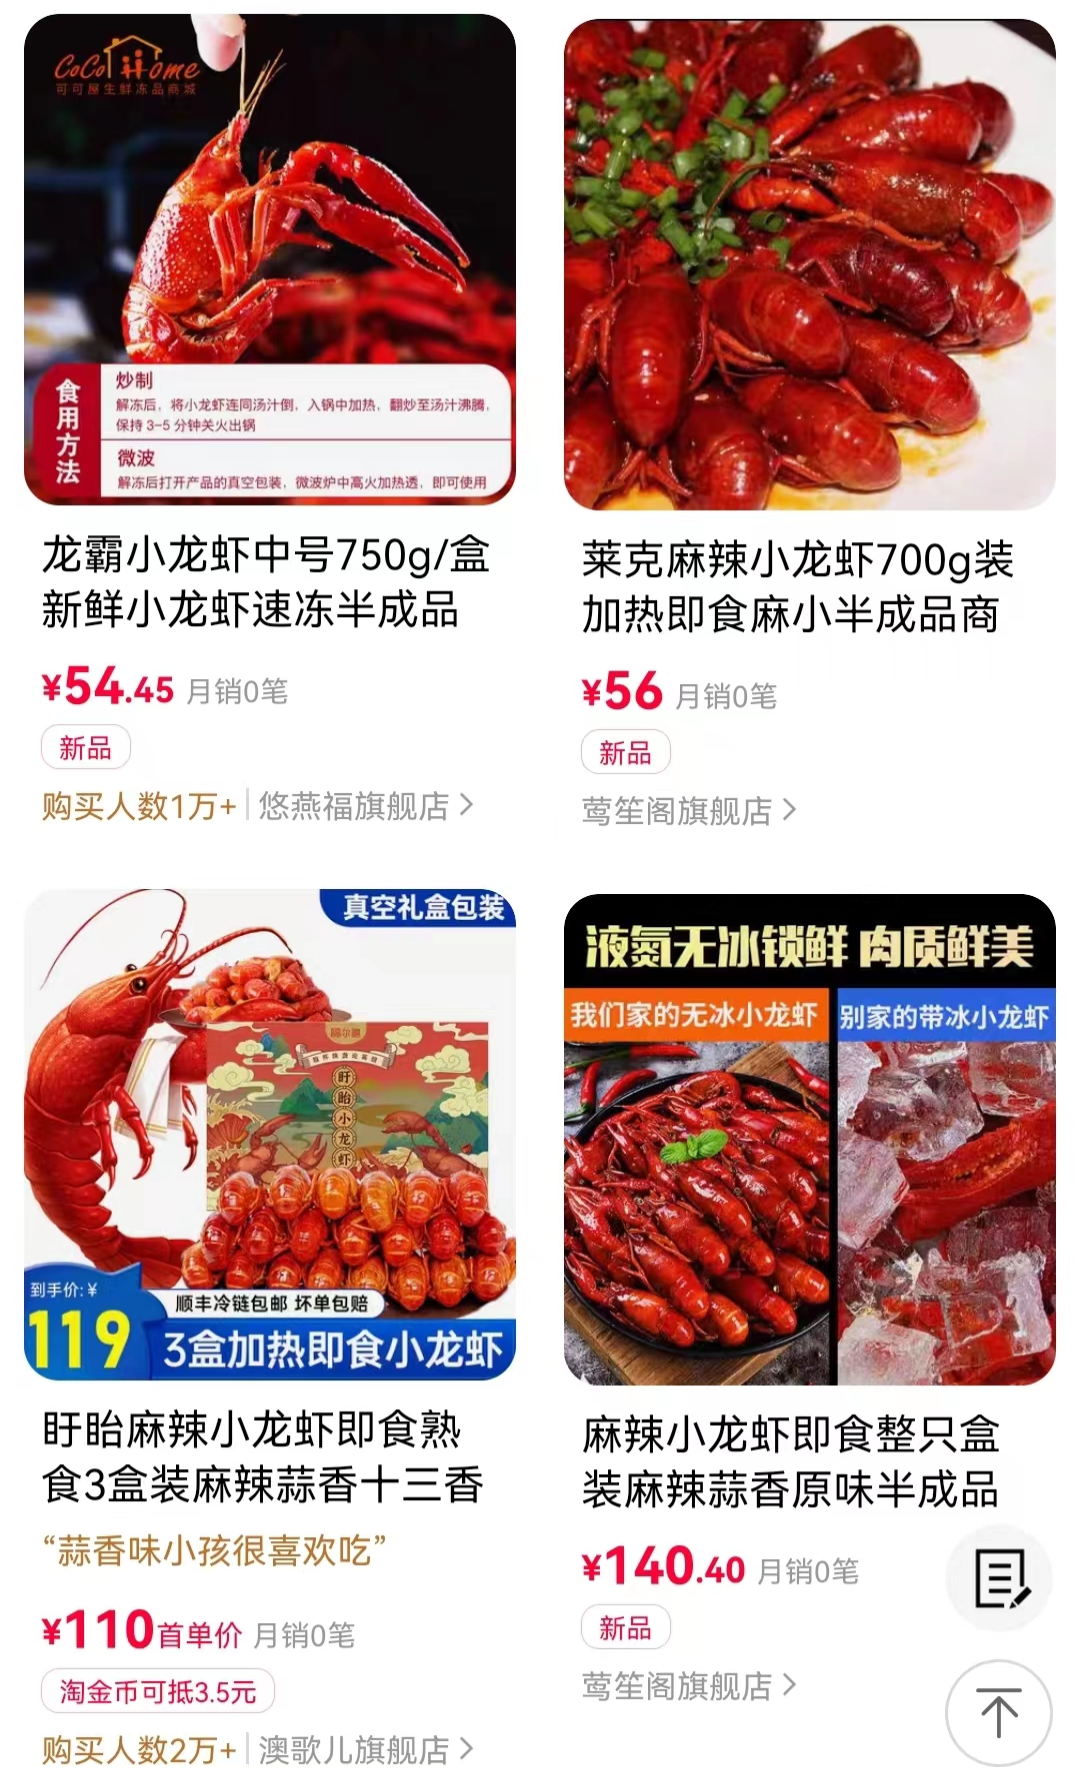 天猫app上可以搜索到6000+小龙虾预制菜